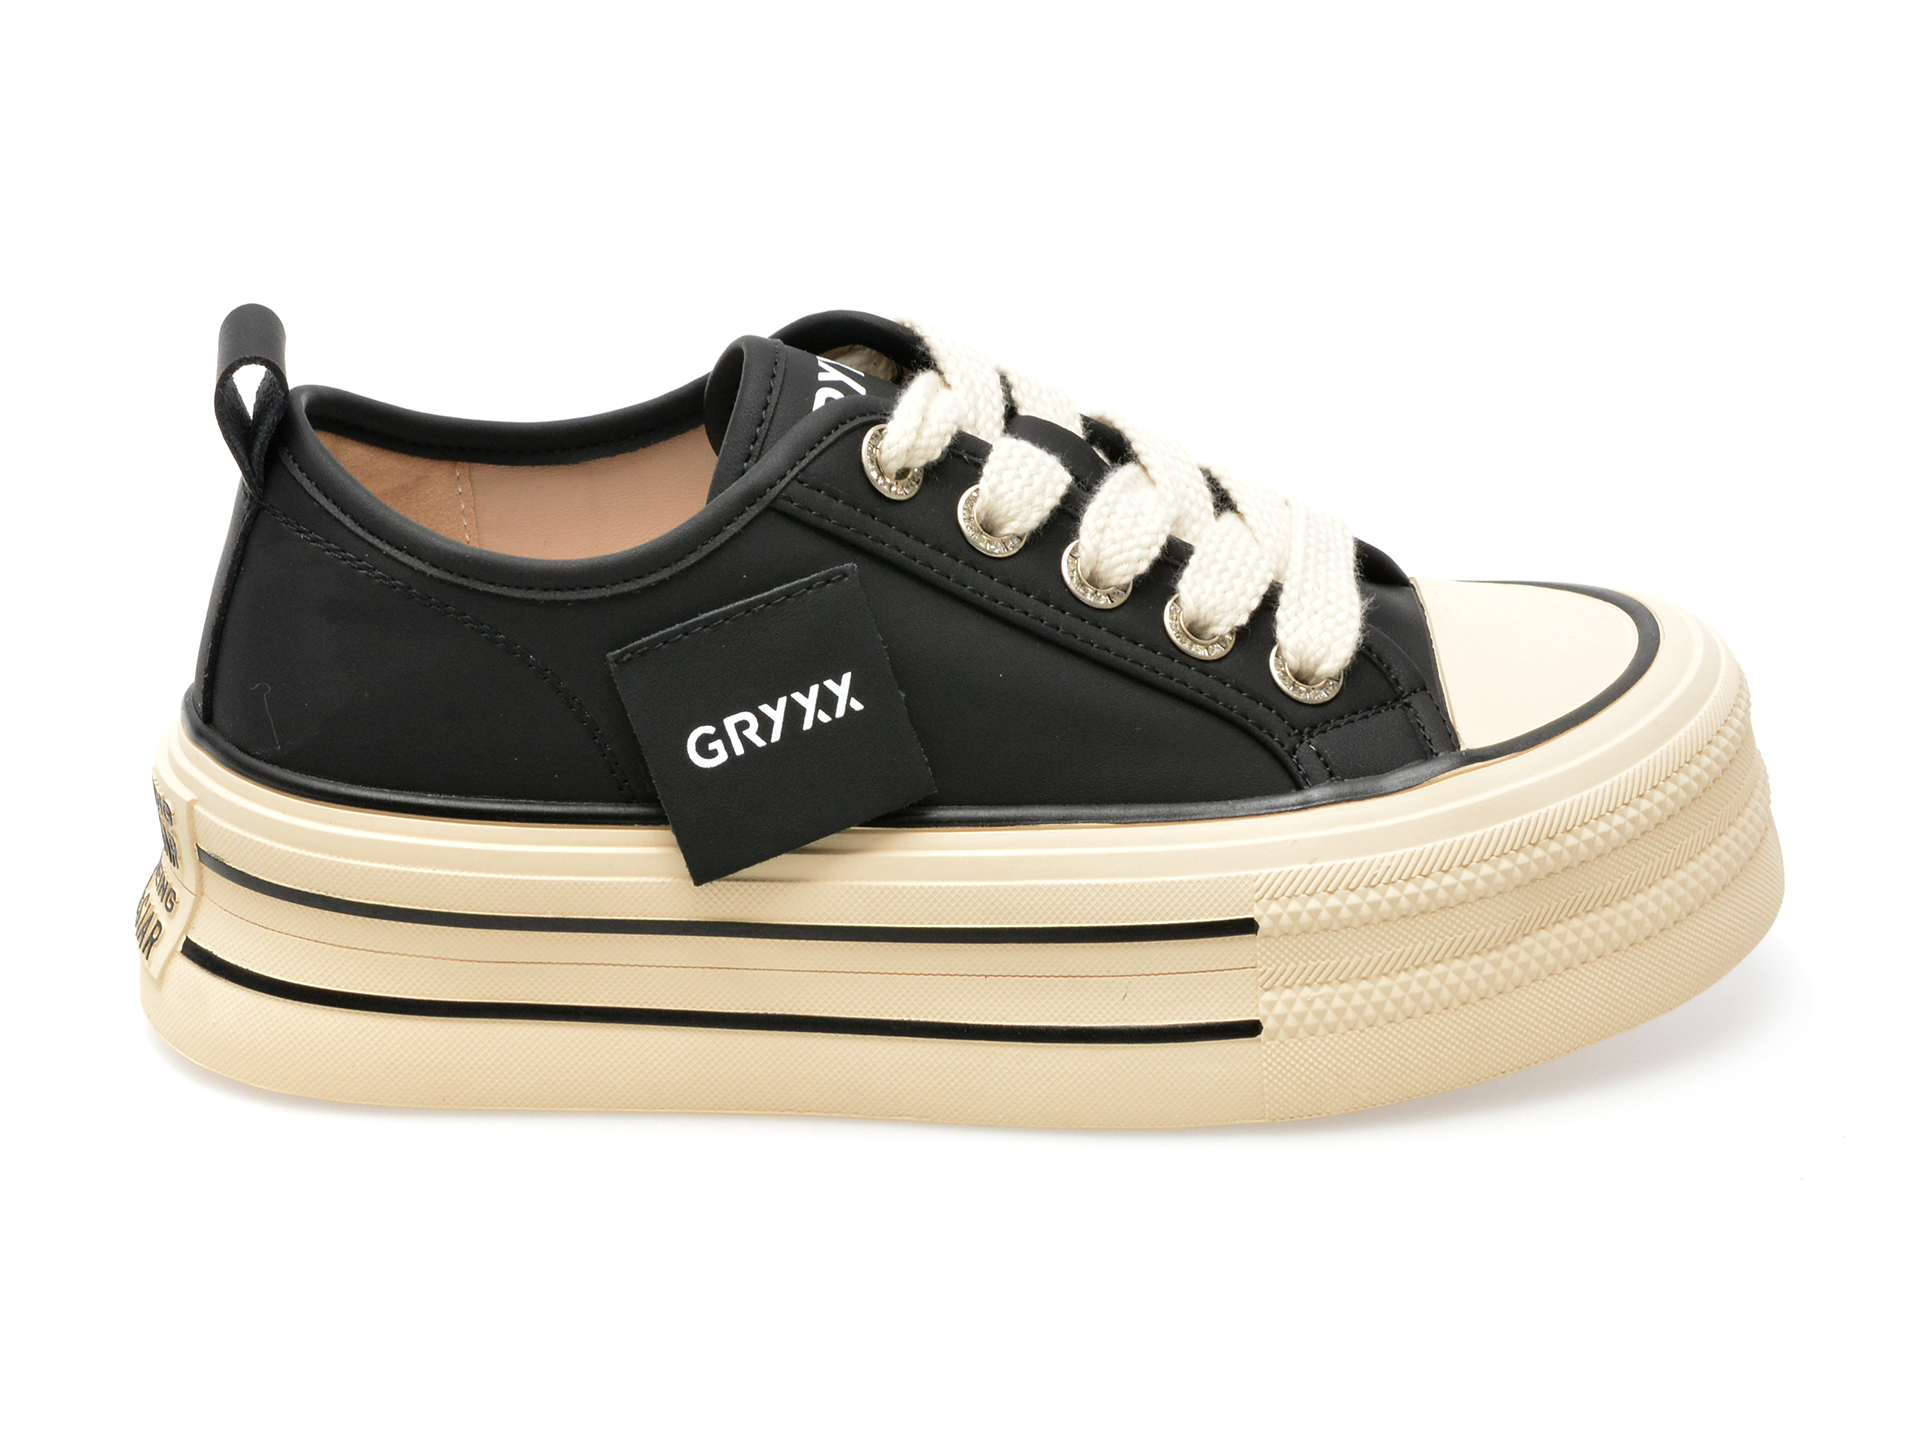 Pantofi GRYXX negri, 3013, din piele naturala